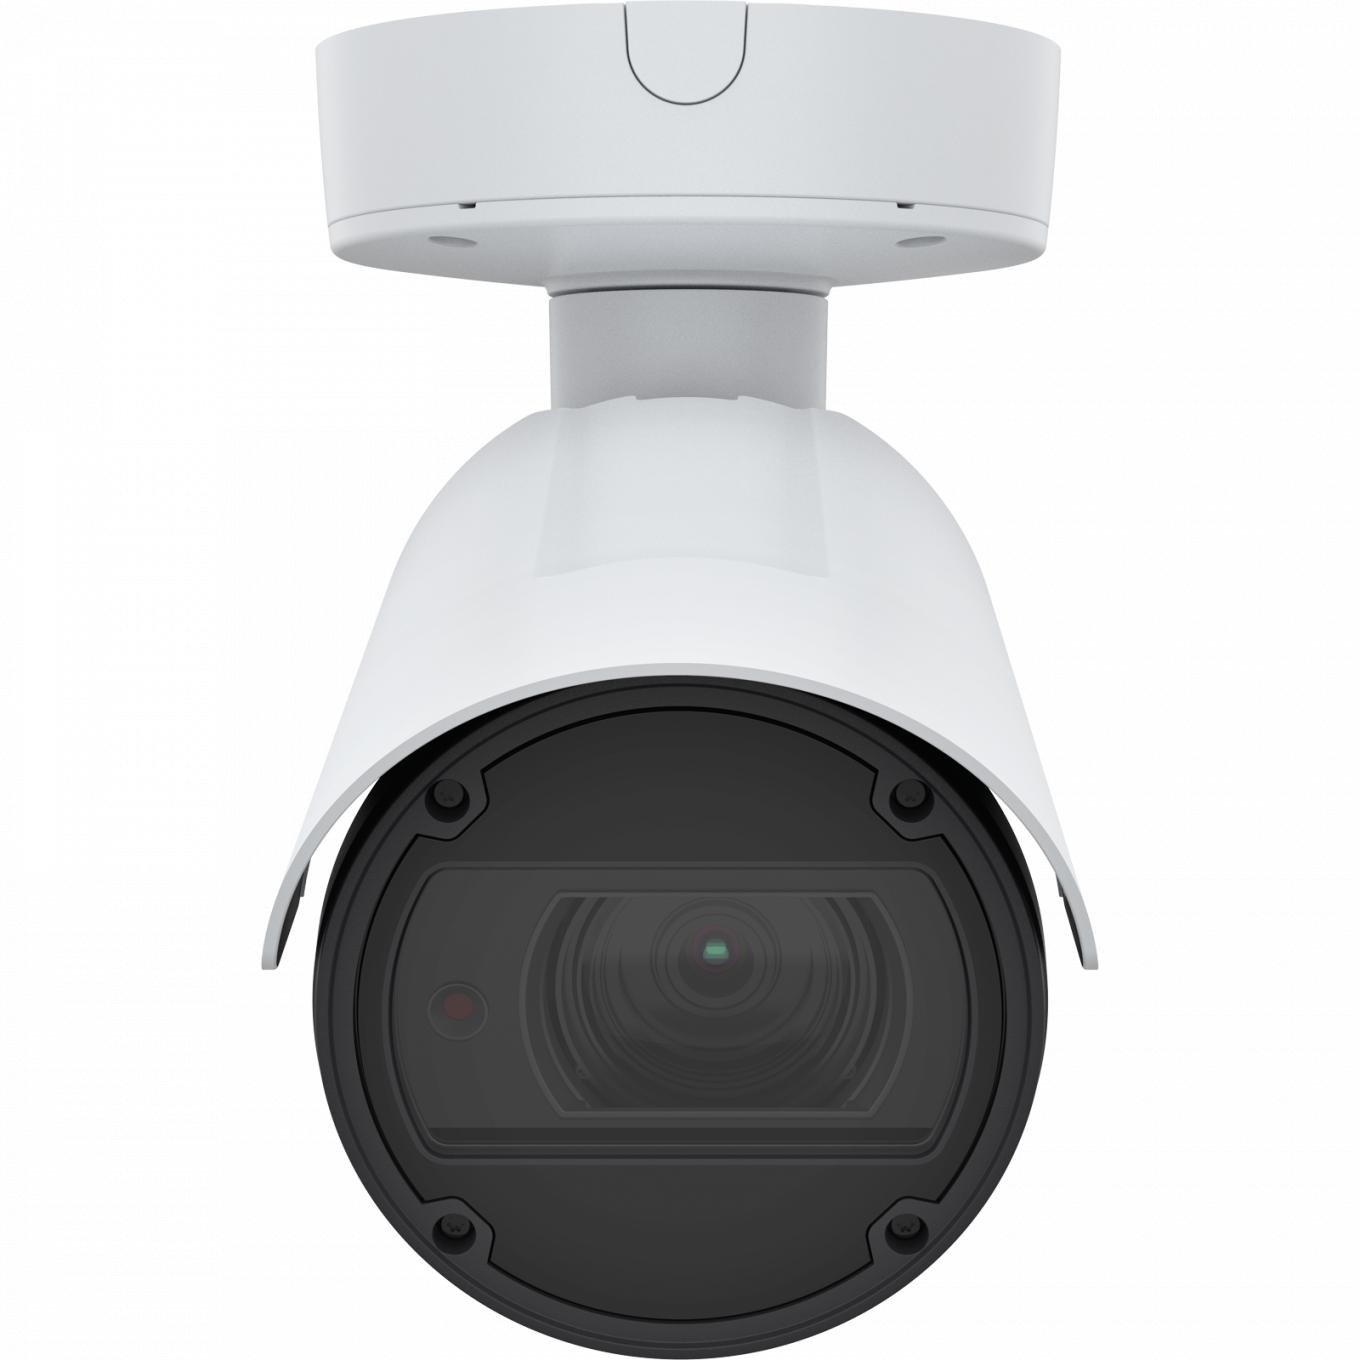 AXIS Q1798-LE IP Camera에는 Zipstream 및 Lightfinder 기능이 있습니다. 이 제품은 전면에서 본 것입니다.